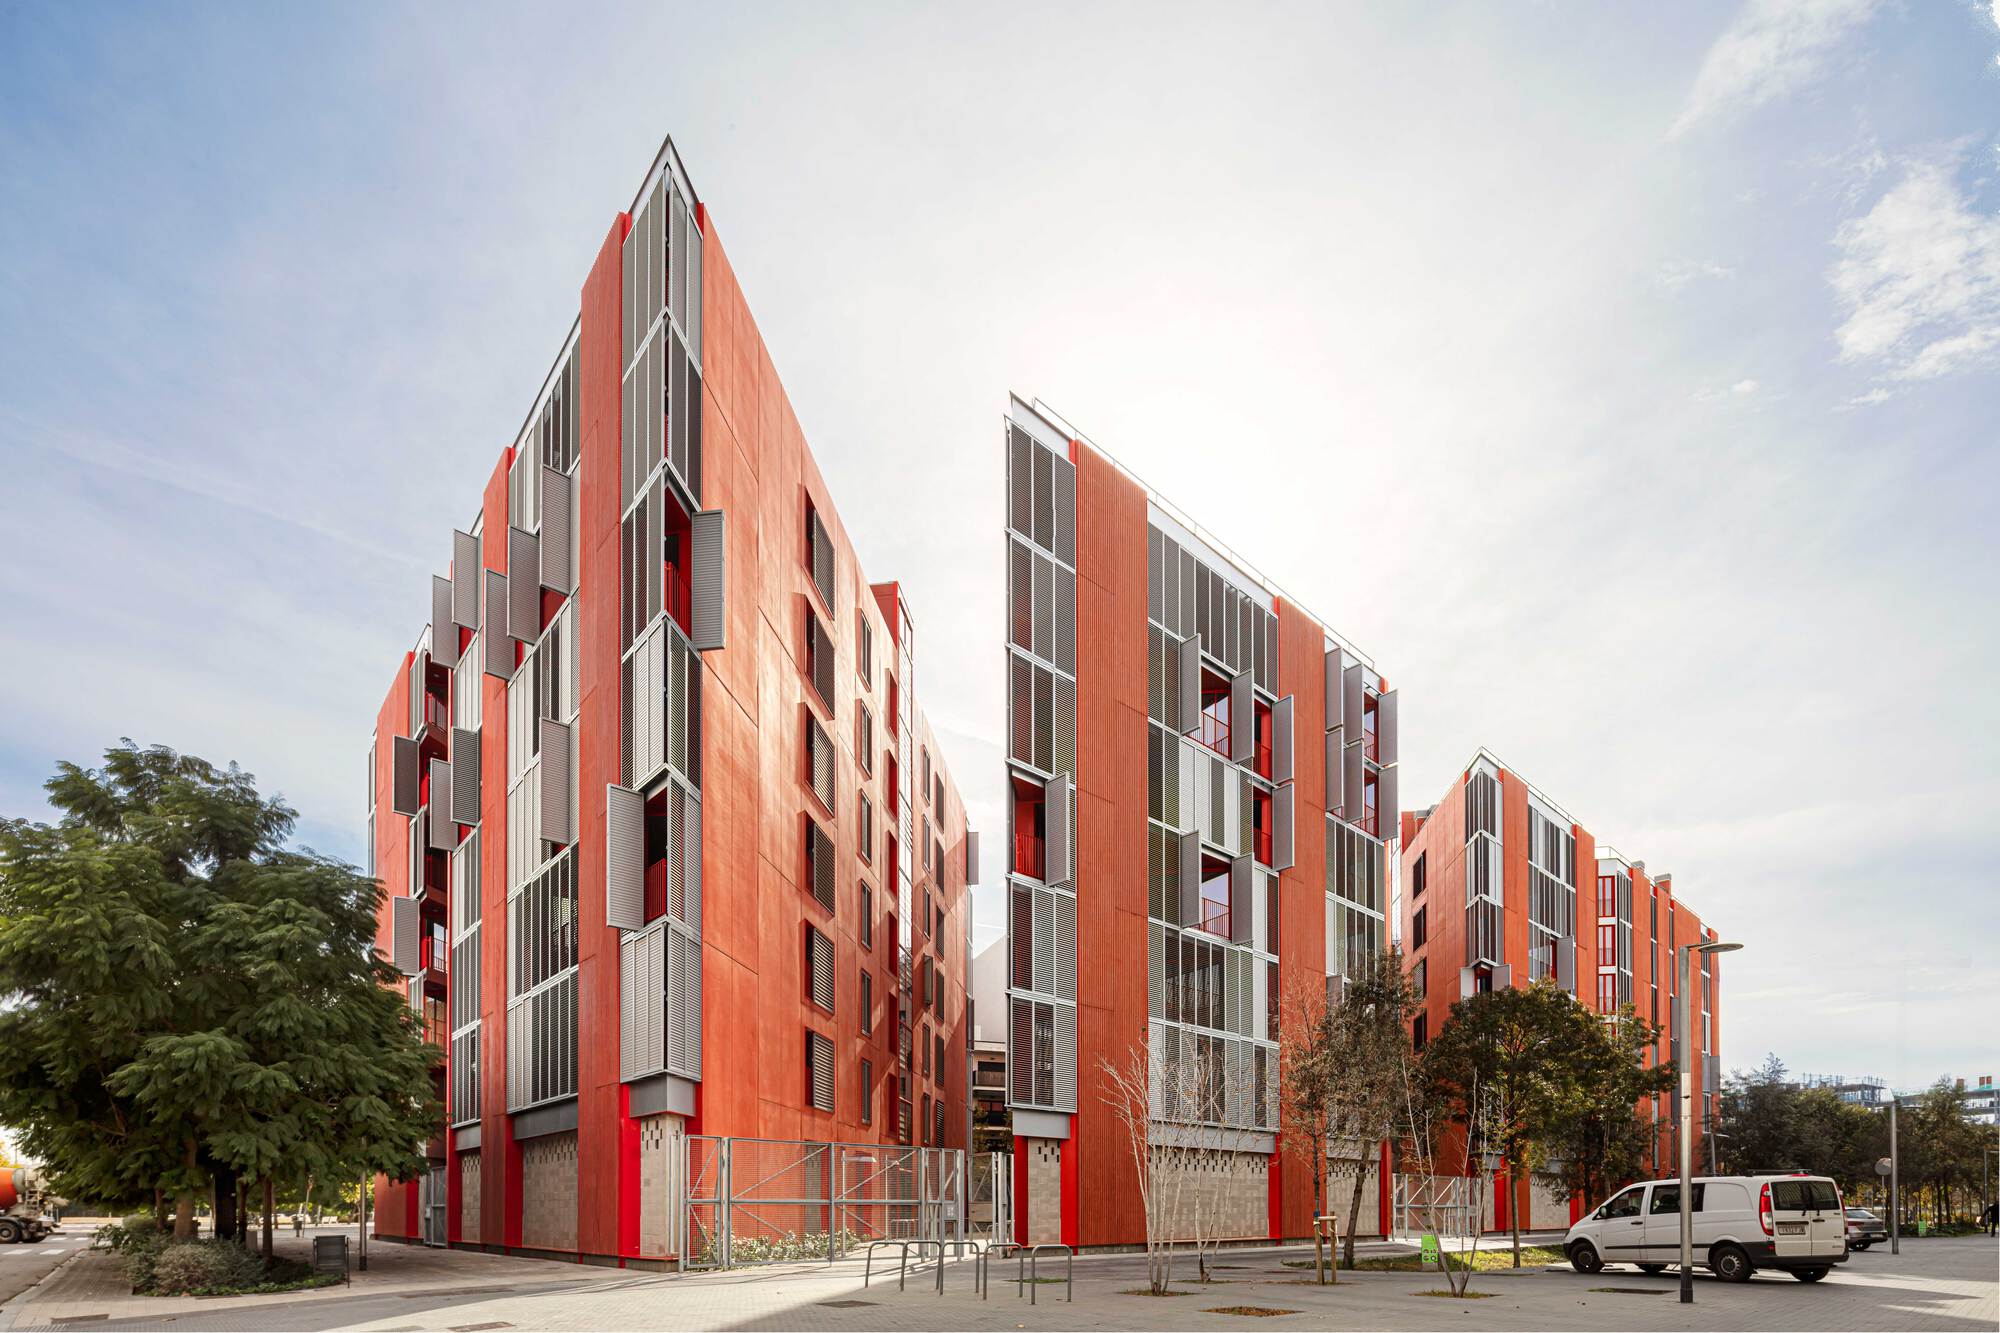 72 единицы социального жилья в Марина-дель-Прат Вермелл / MIAS Architects + Coll-Leclerc Arquitectos